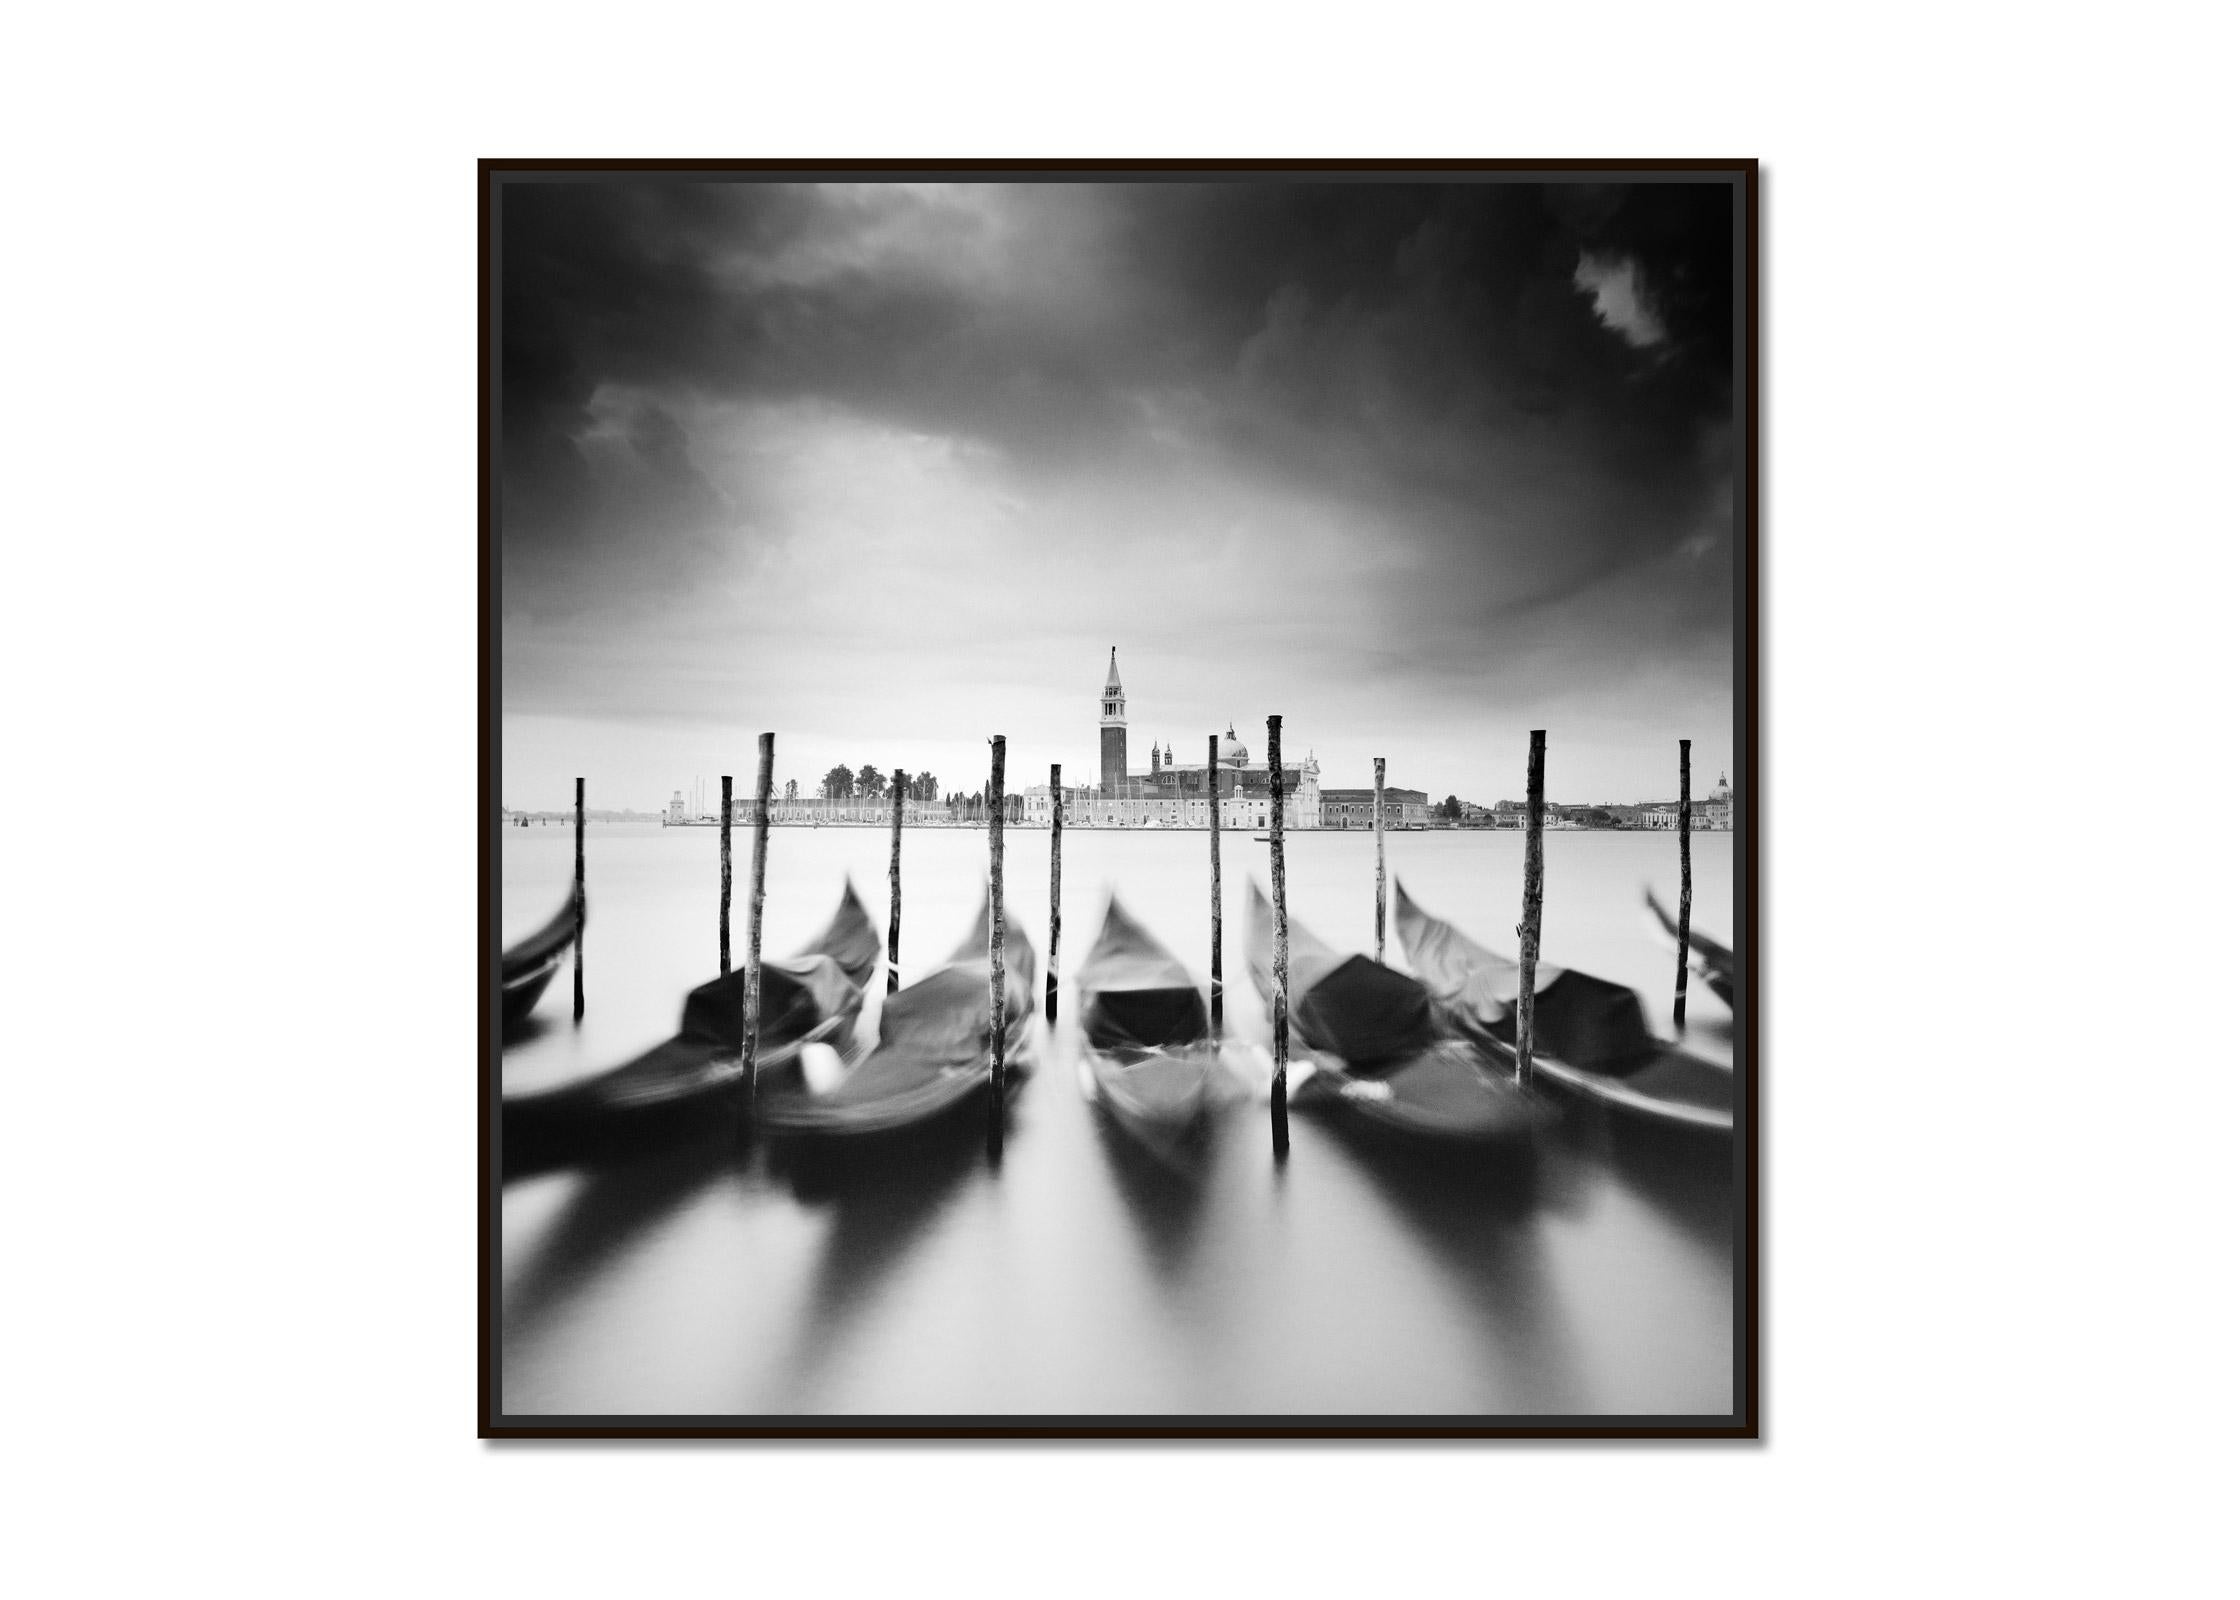   Basilica di San Giorgio Maggiore, Venice, black and white fine art photography - Photograph by Gerald Berghammer